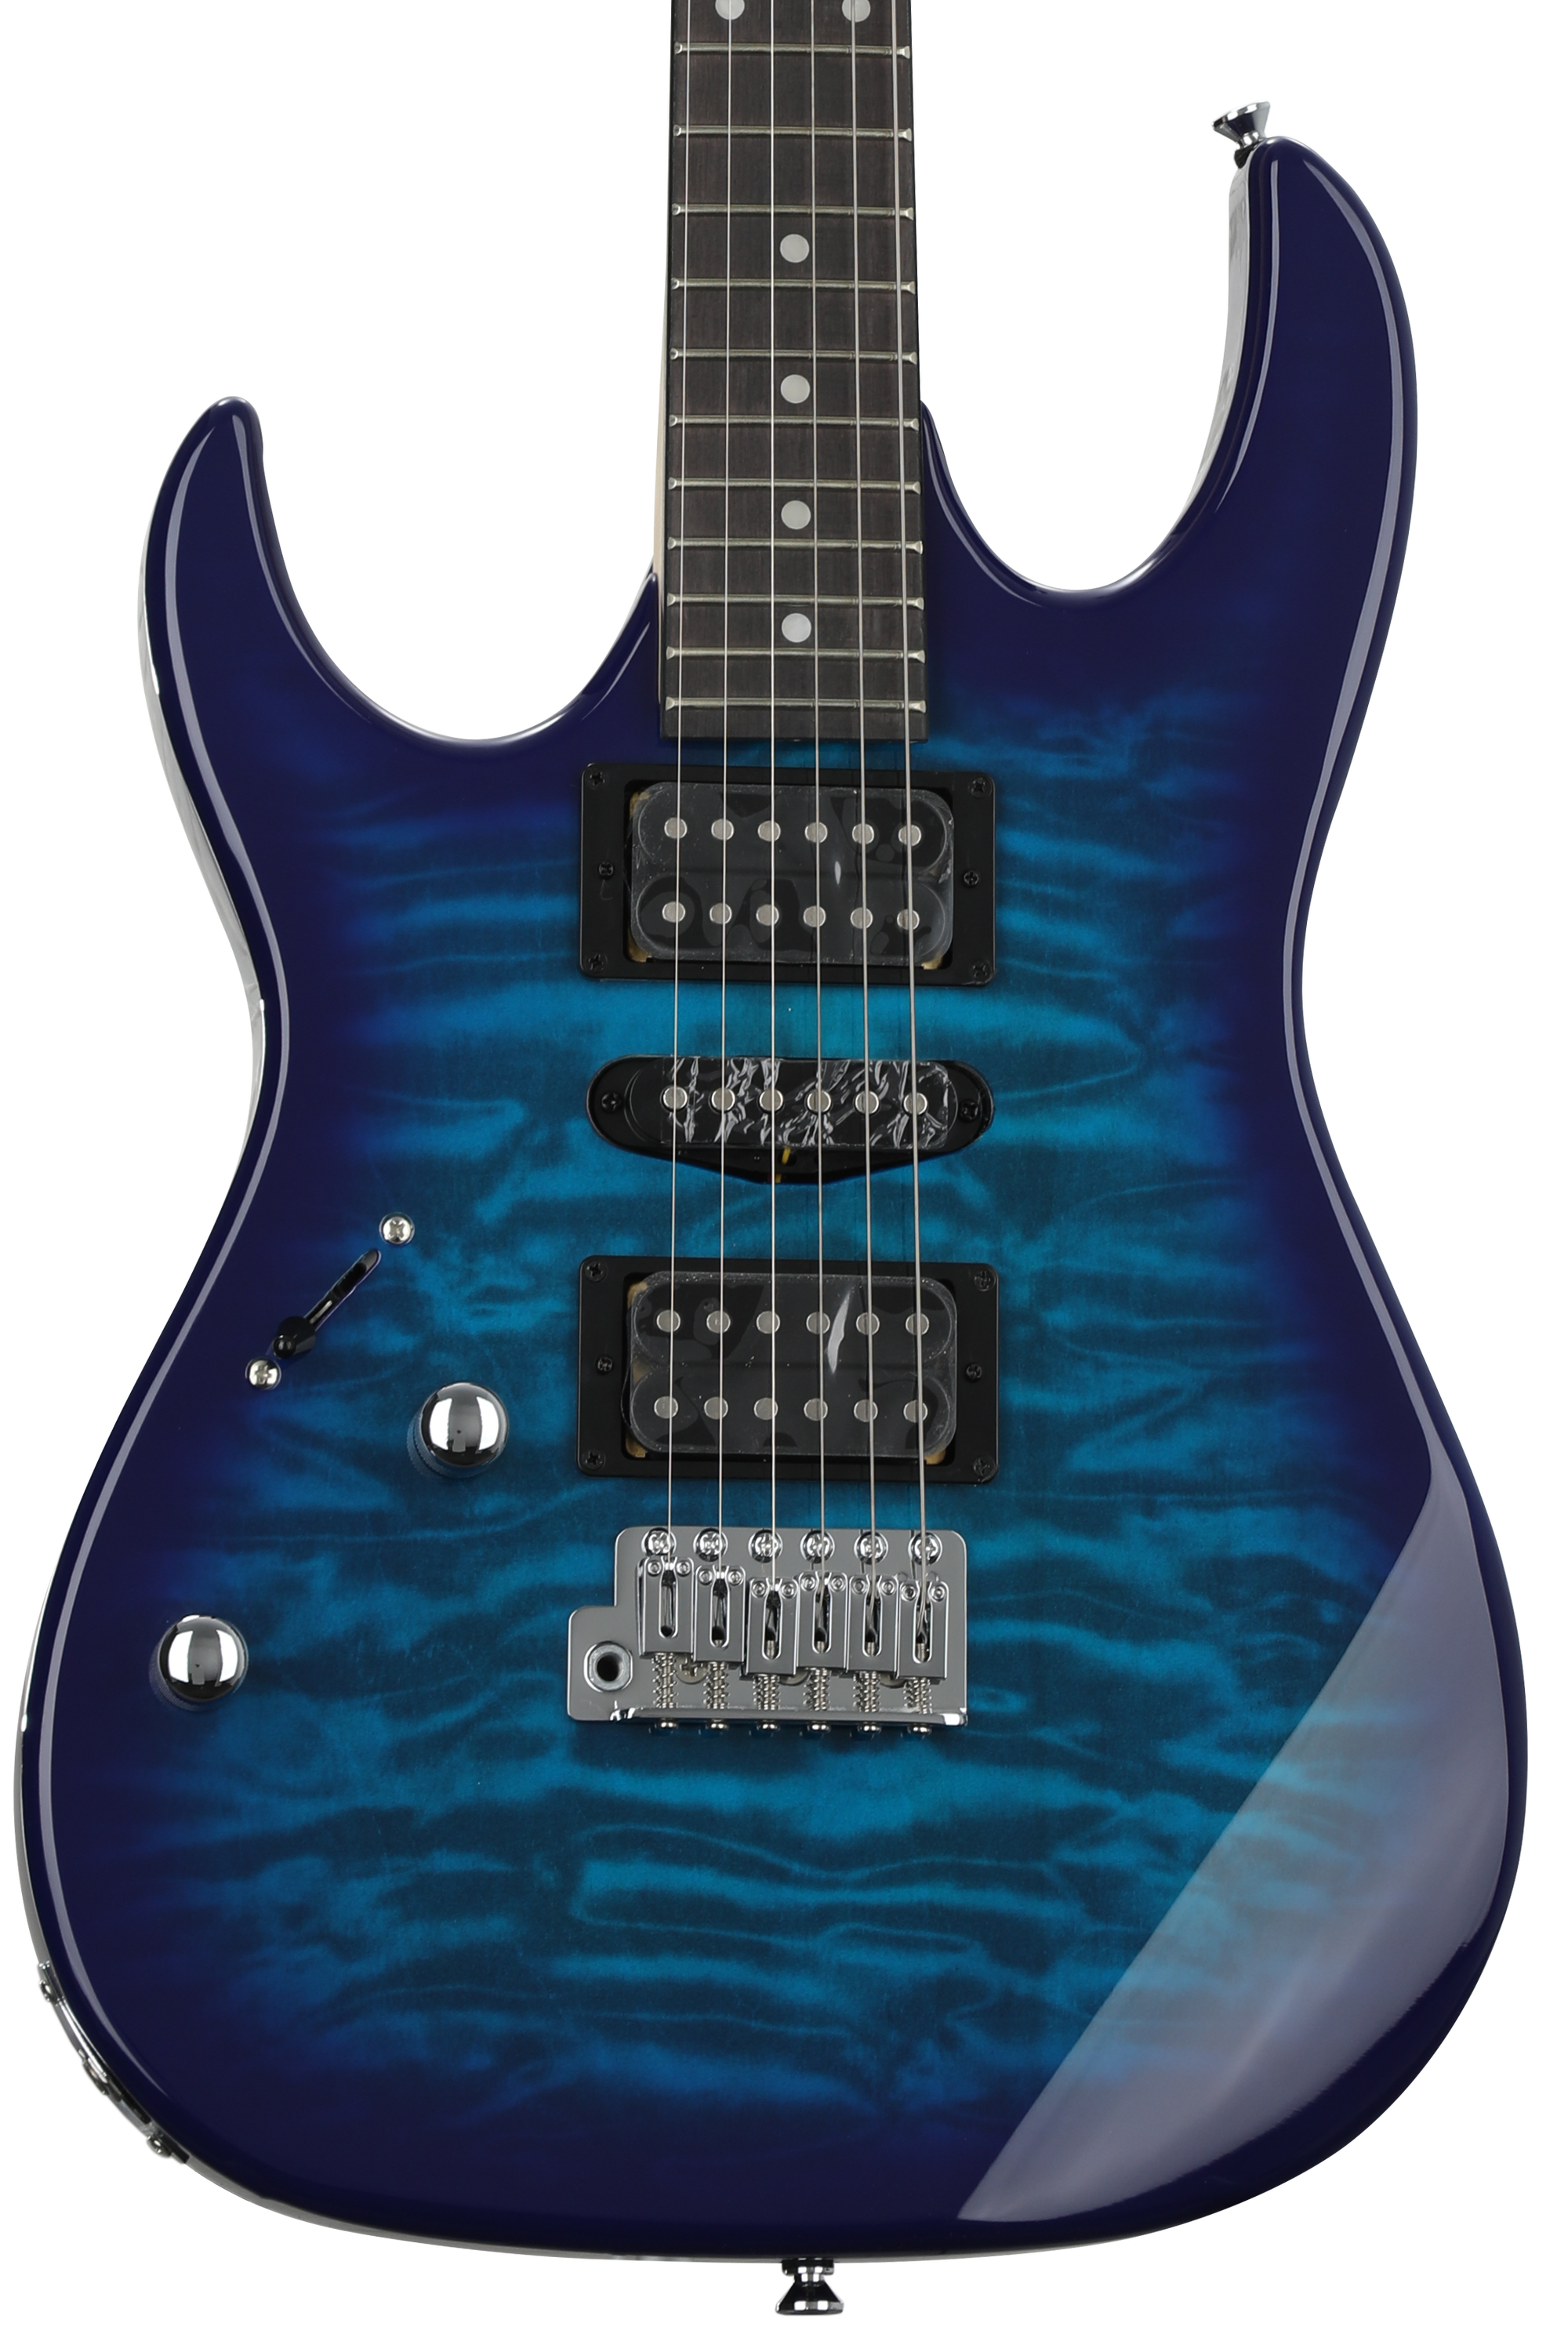 Bundled Item: Ibanez Gio GRX70QAL Left-handed Electric Guitar - Transparent Blue Burst